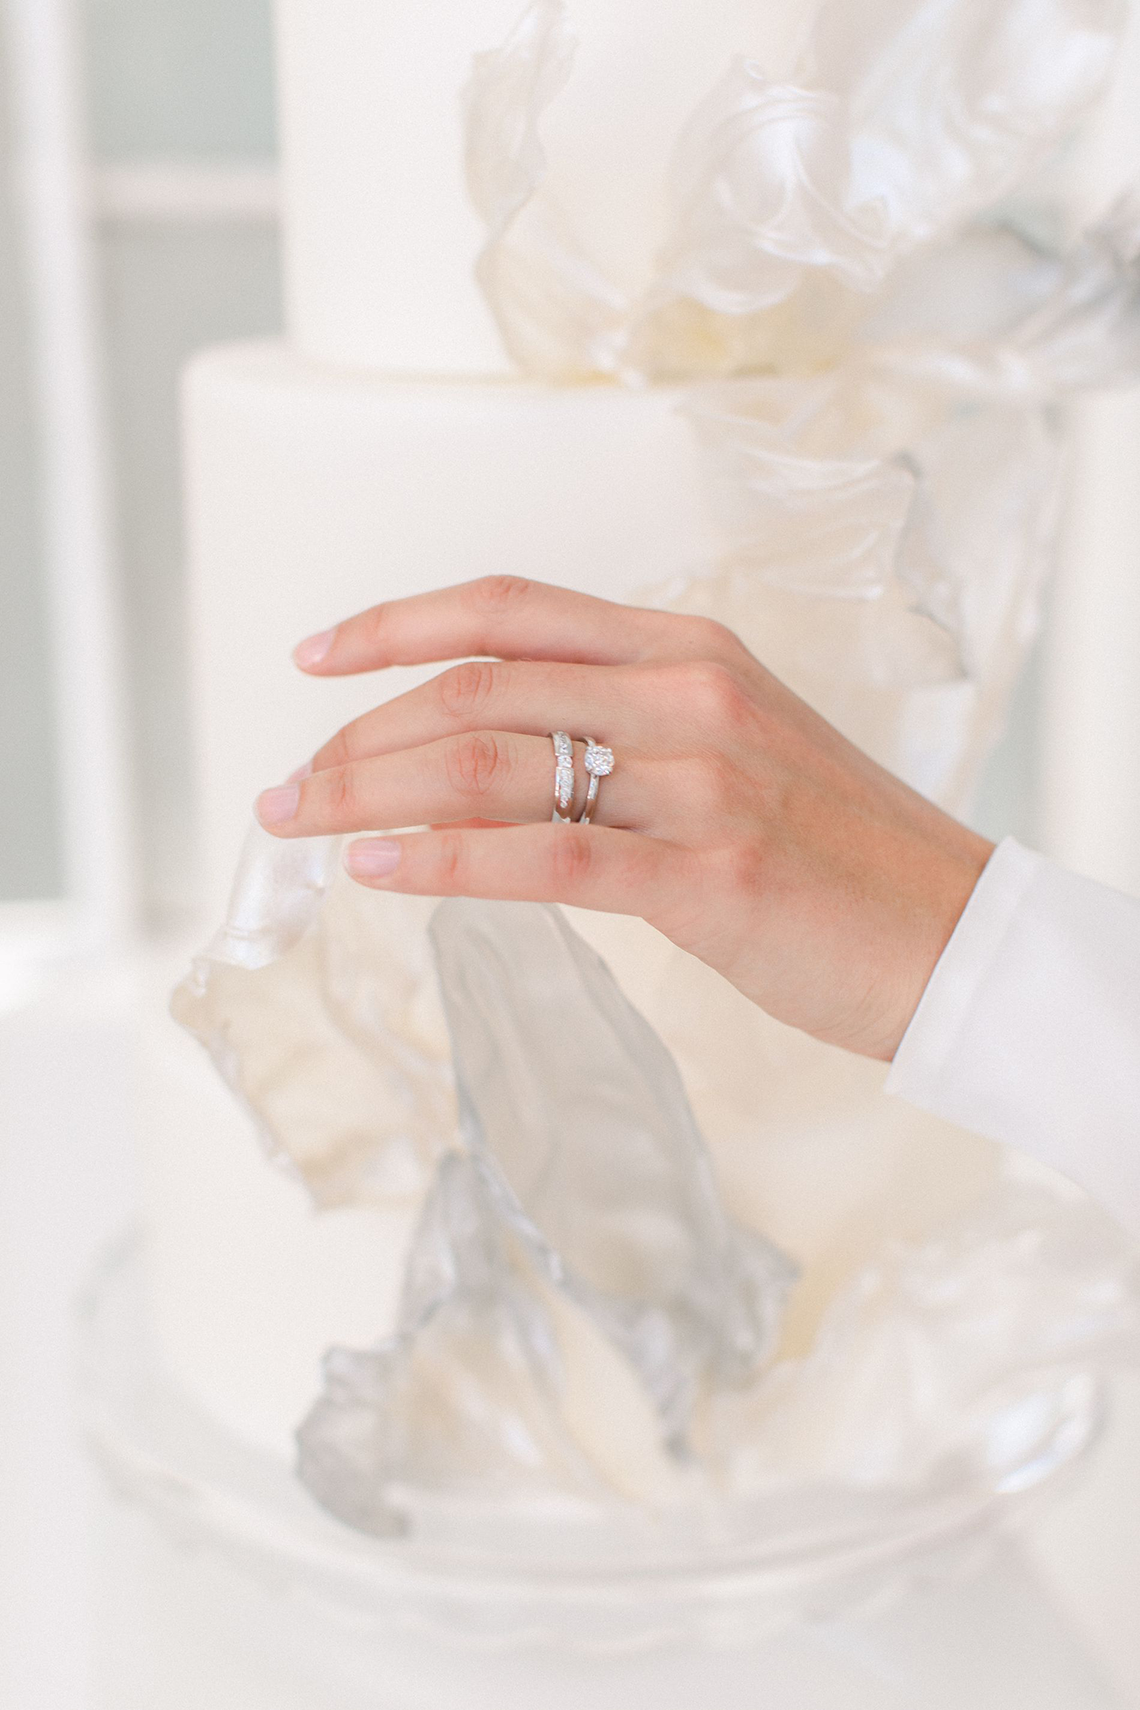 Artístico y moderno diseño de boda completamente blanco - DIE PULVERFABRIK ROTTWEIL - EWIGMEIN - Bridal Musings 21